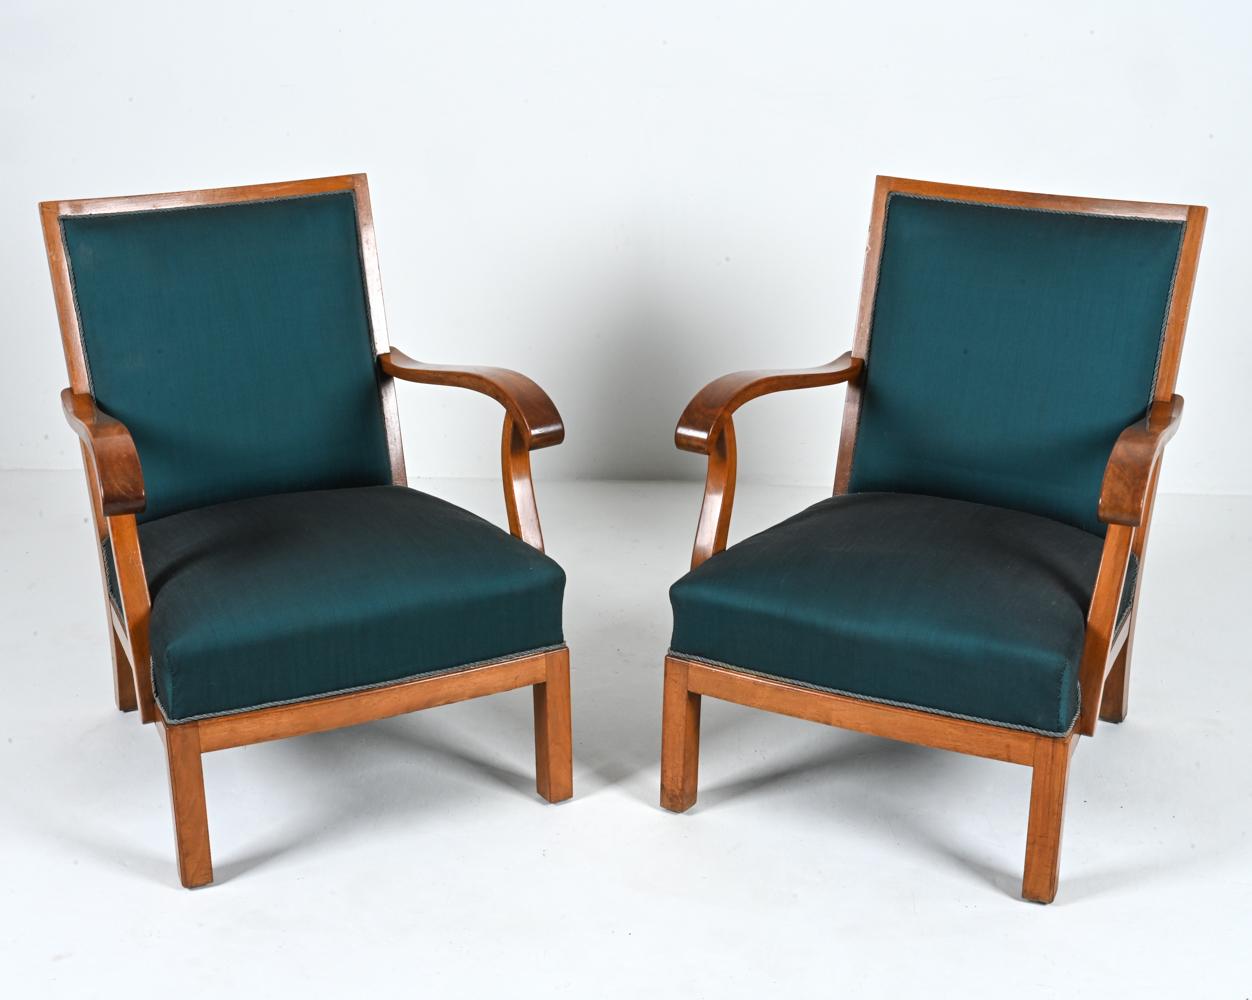 Voici une paire rare et exquise de chaises de salon à accoudoir ouvert conçues par le célèbre artisan danois, Erik Wørts, et méticuleusement produites au Danemark dans les années 1950. Ces chaises exceptionnelles mettent en valeur la beauté